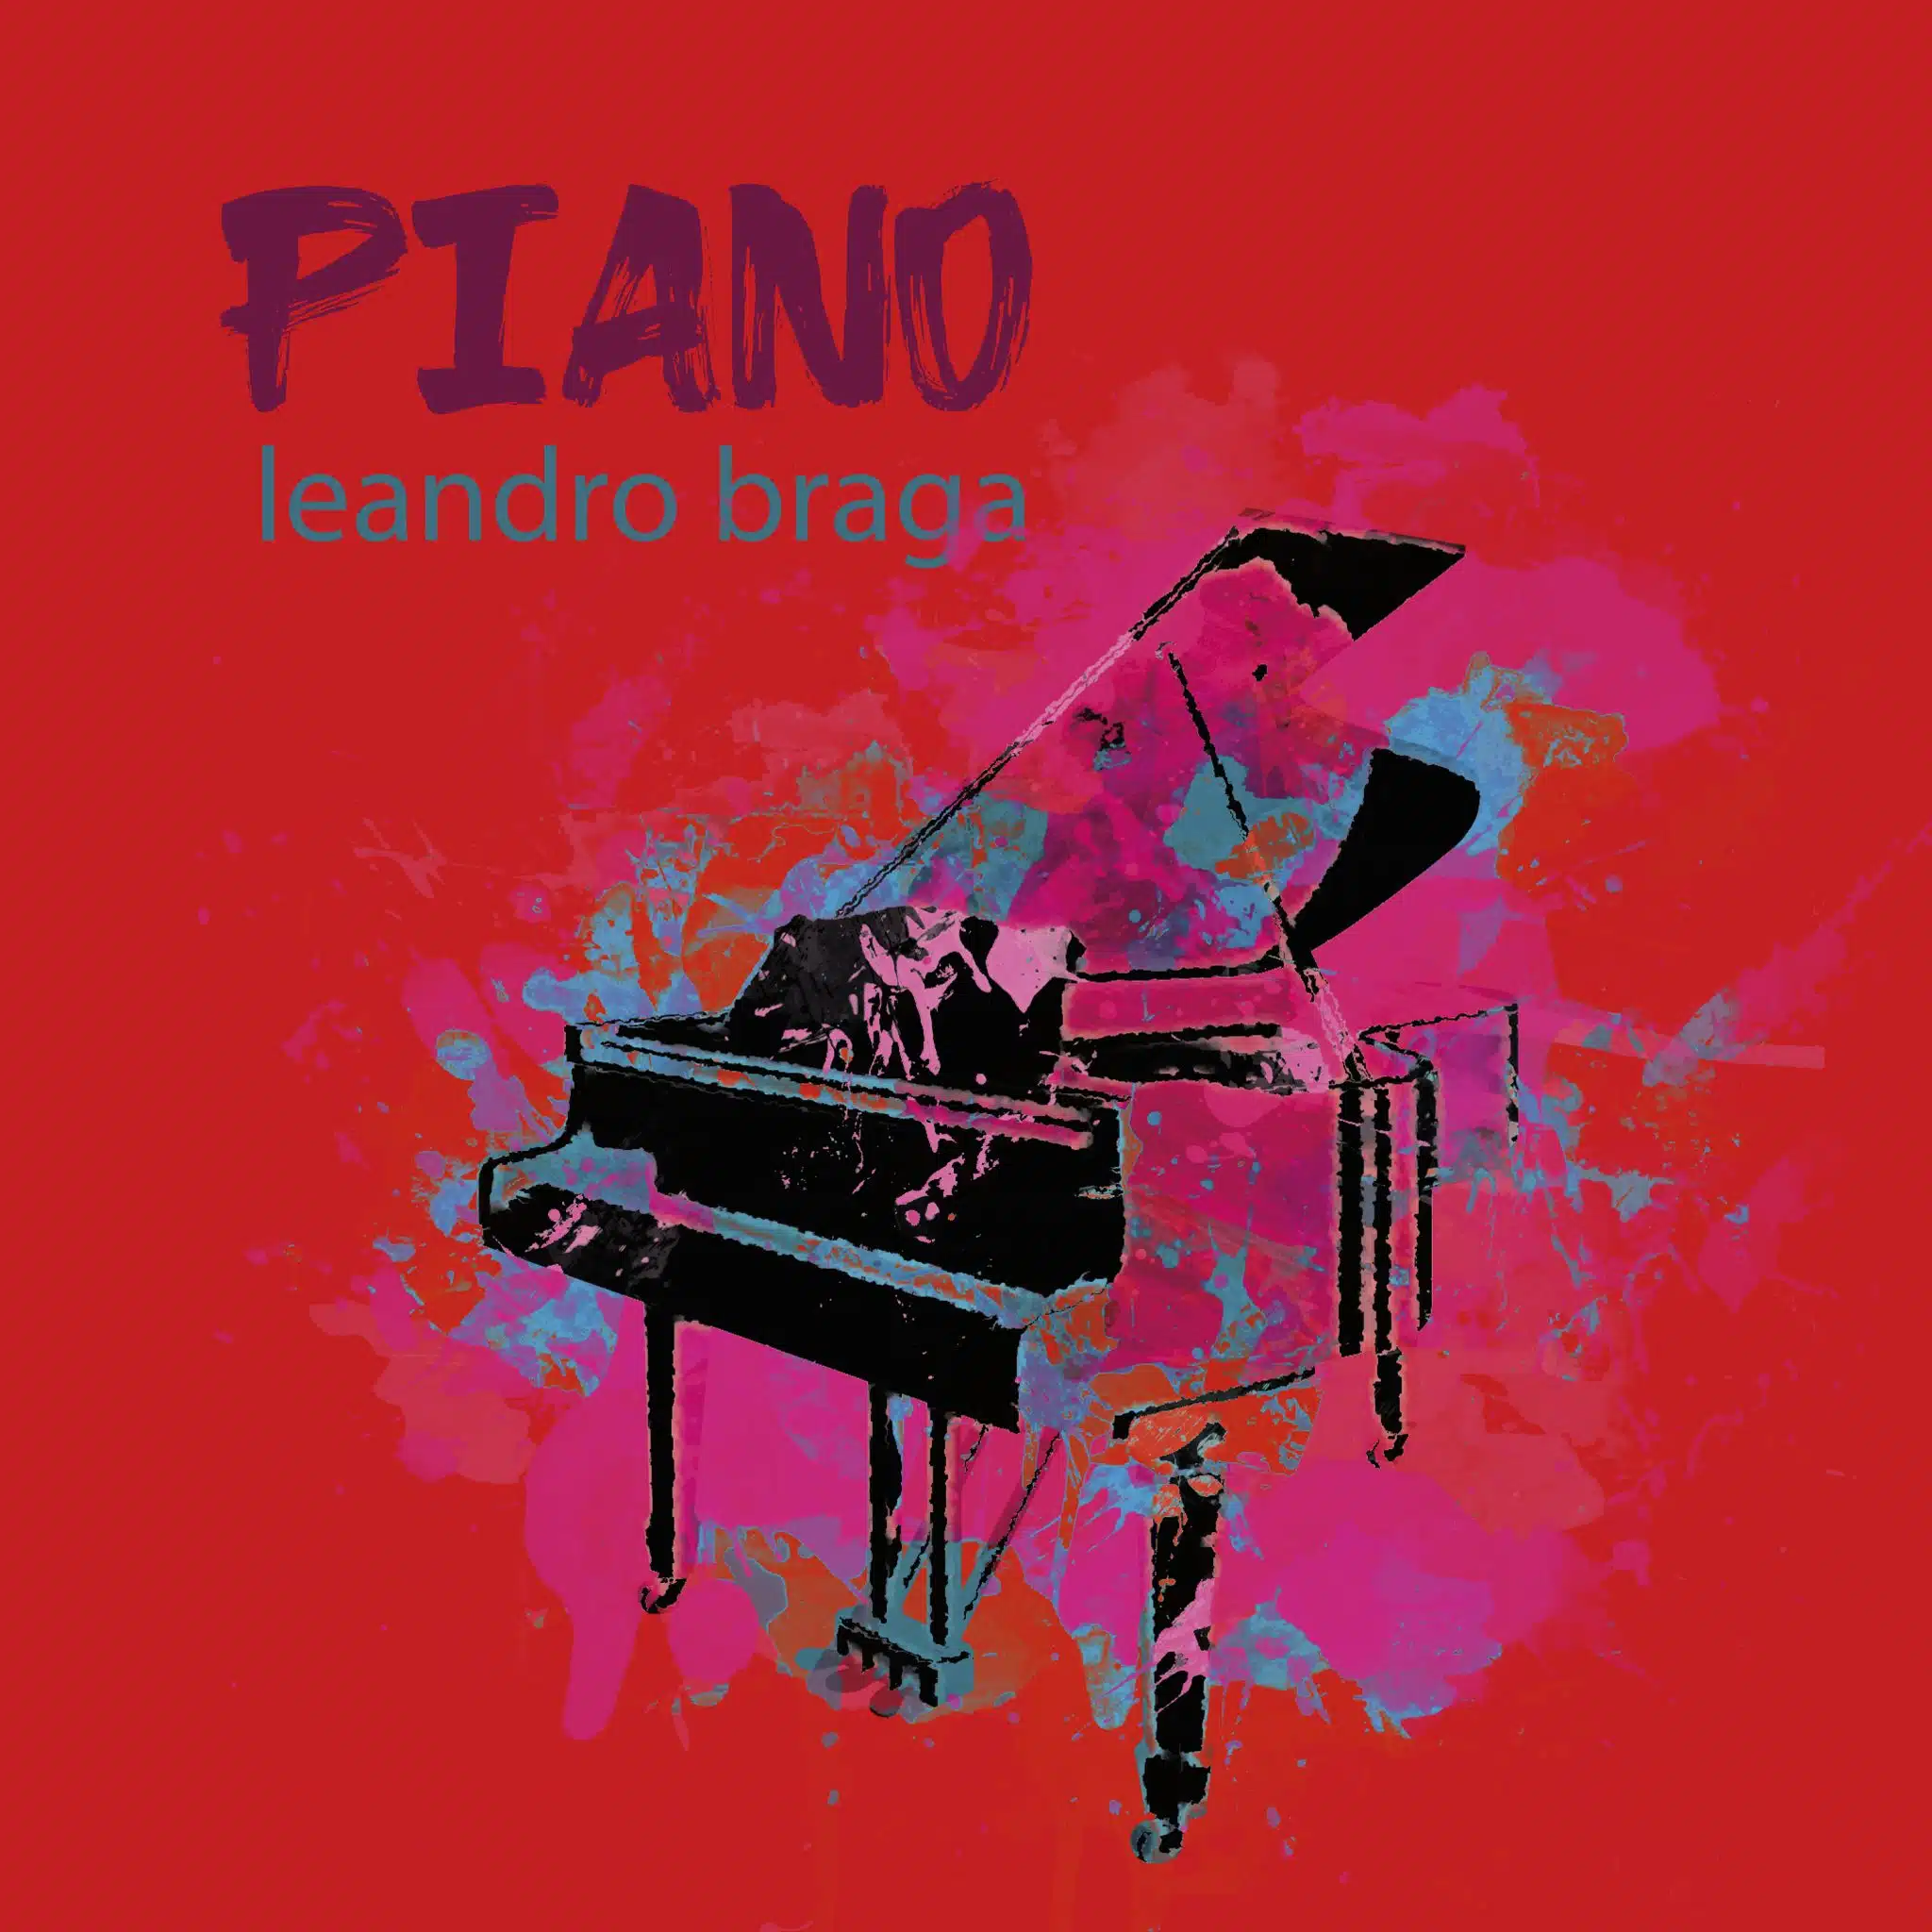 revistaprosaversoearte.com - 'Piano', álbum do pianista e compositor Leandro Braga, lançado pela Biscoito Fino